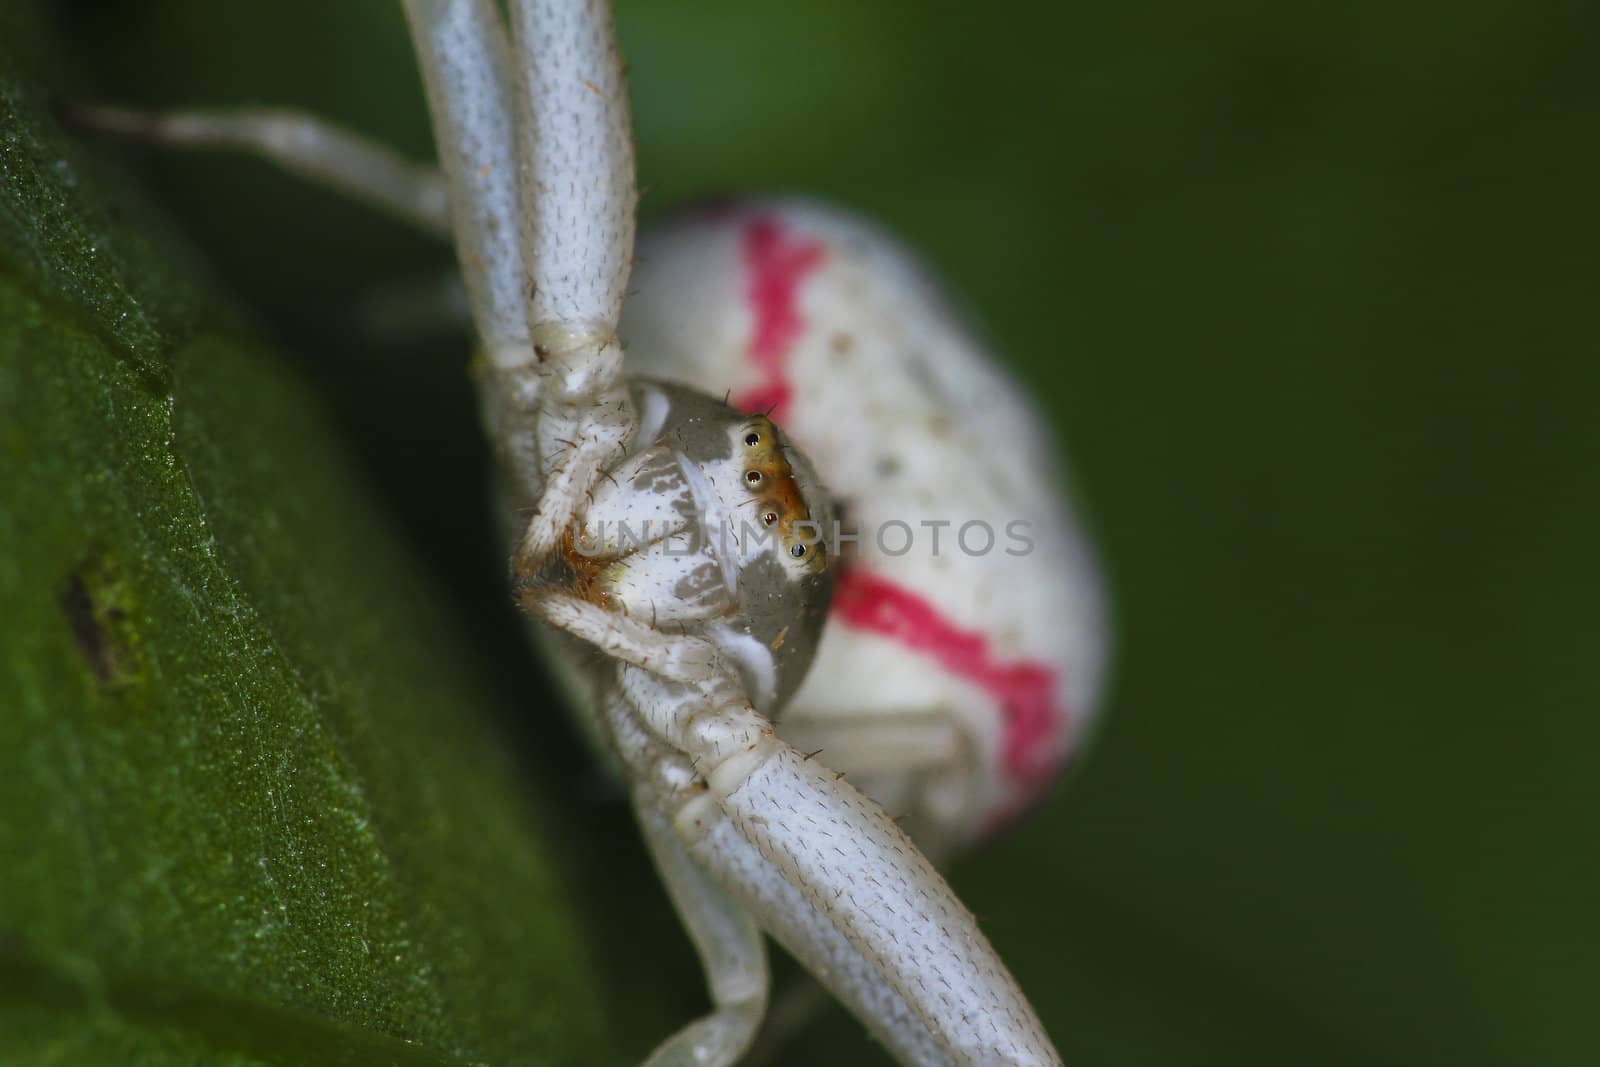 Crab spider (Misumena vatia) waiting for prey. Extreme close-up.